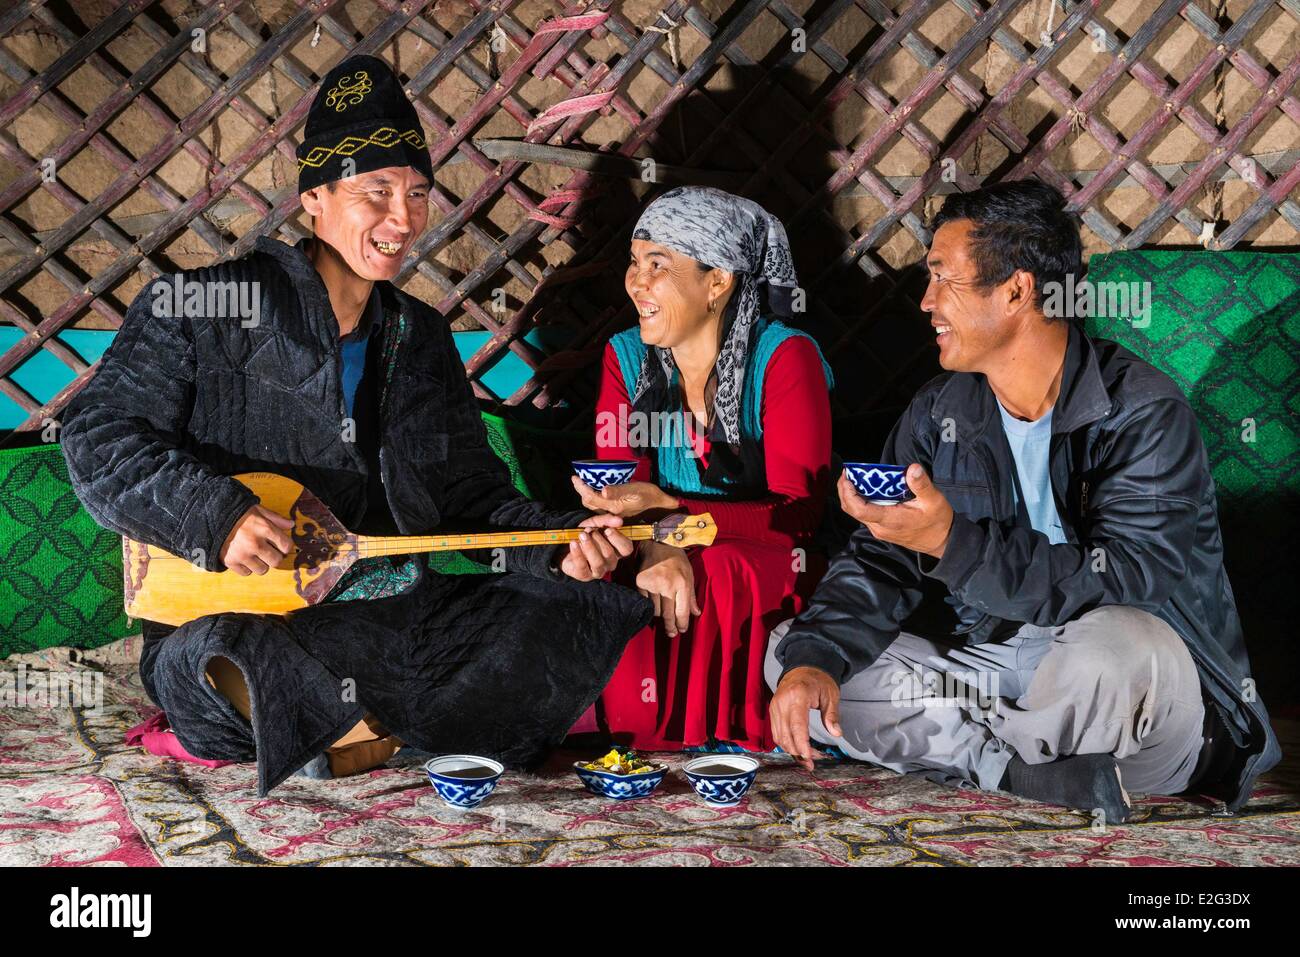 Usbekistan Seidenstraße Navoiy Provinz Nurata Yurt Camp Ajdar Musiker und zwei Freunde in einer Jurte Stockfoto